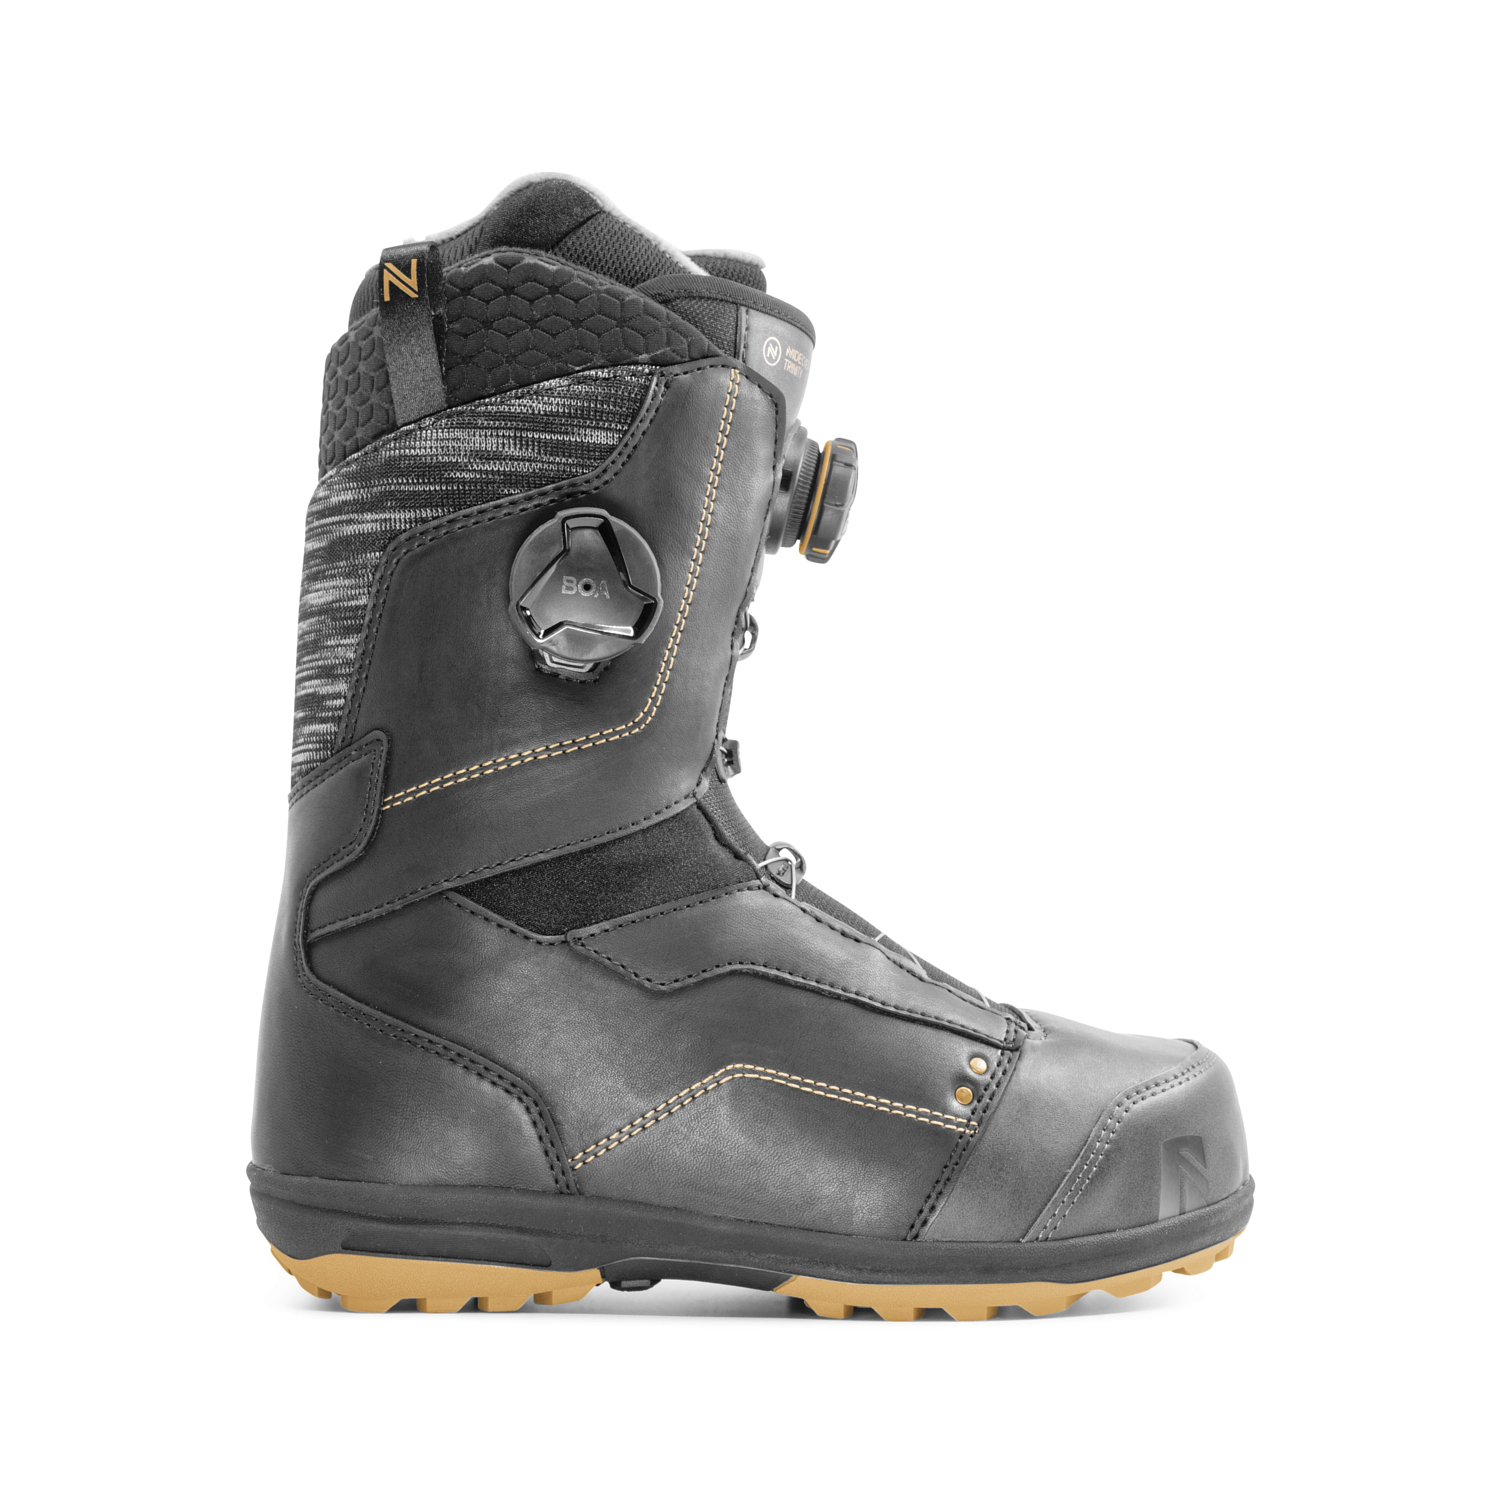 Ботинки для сноуборда NIDECKER 2020-21 Trinity Black